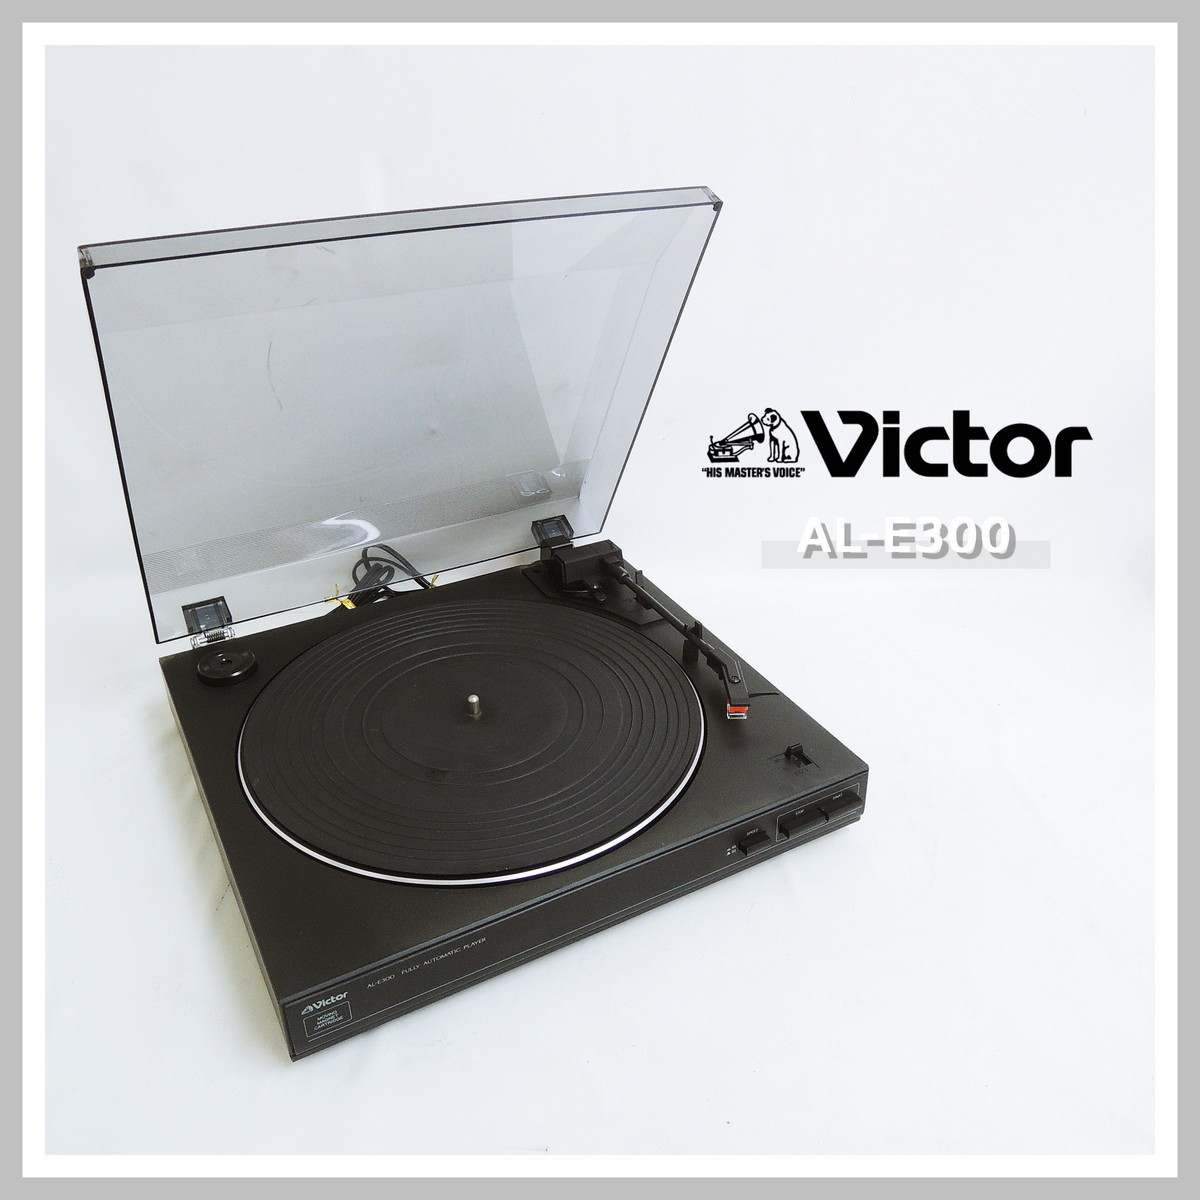 ビクター AL-E300 レコードプレーヤー ターンテーブル フルオート Victorの画像1